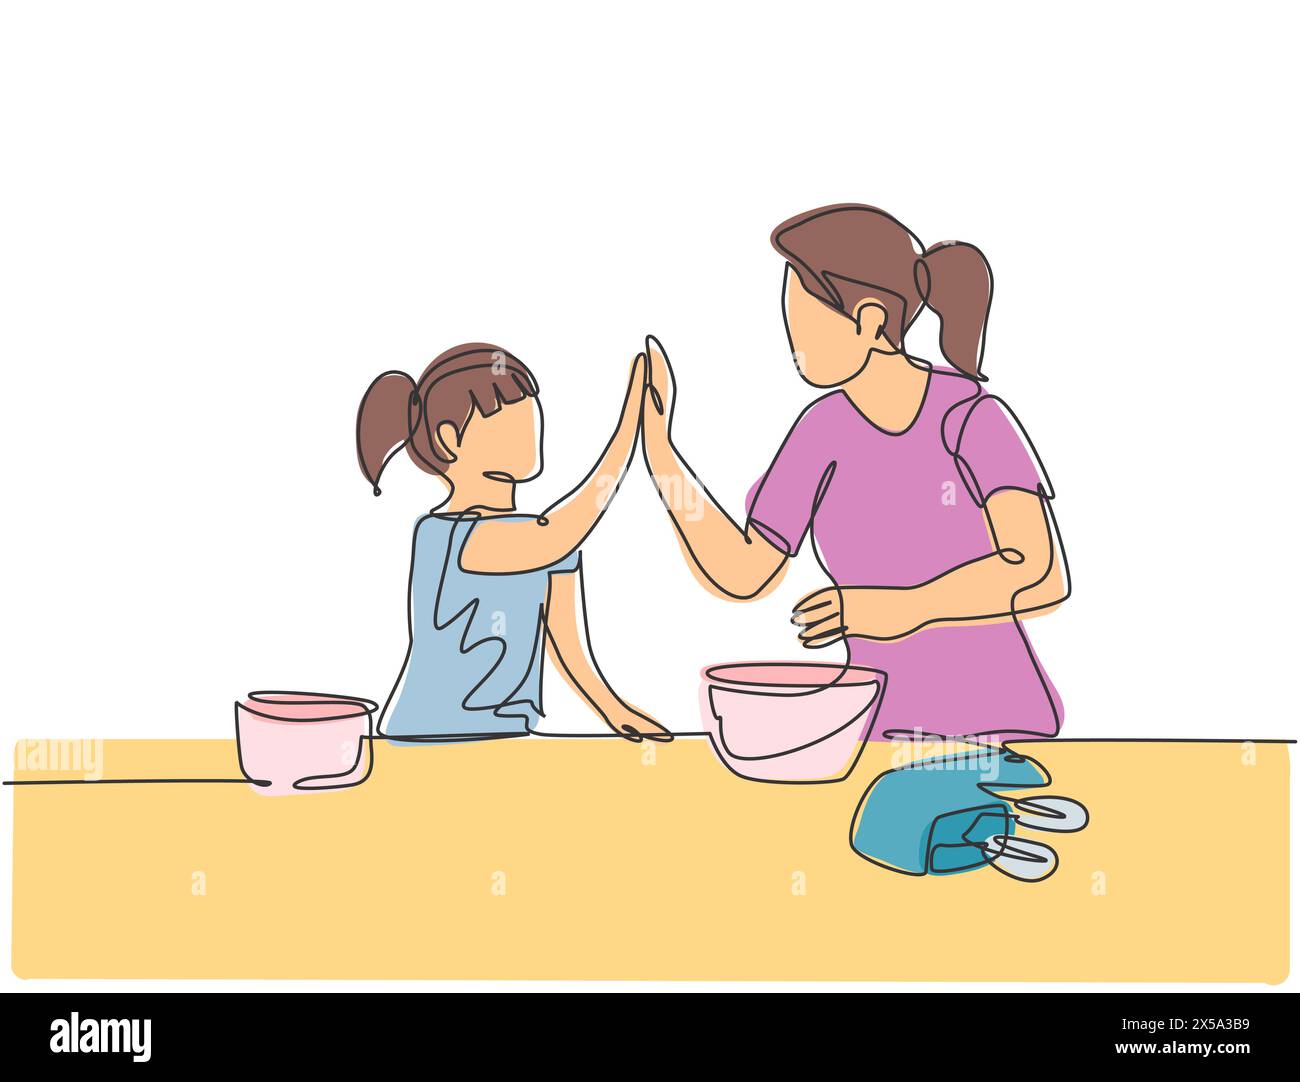 Disegno a linea singola di madre e figlia che si prepara a cucinare alcuni biscotti in cucina e dando alto cinque gesto. Concetto parenting li continuo Illustrazione Vettoriale